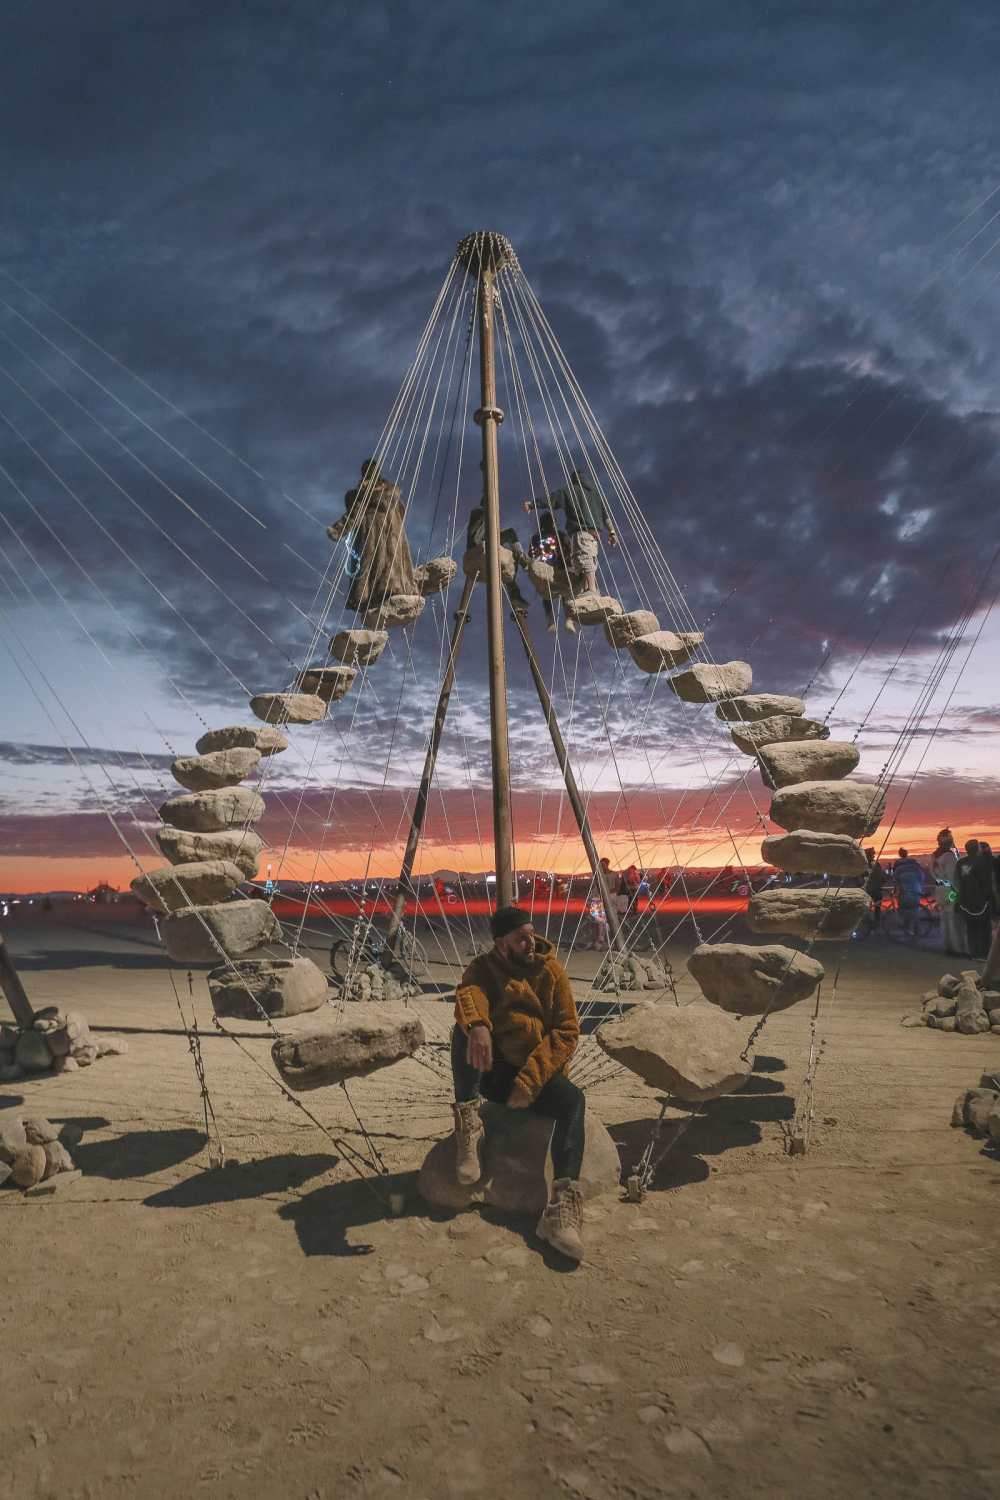  Руководство для начинающих по Burning Man (11) 